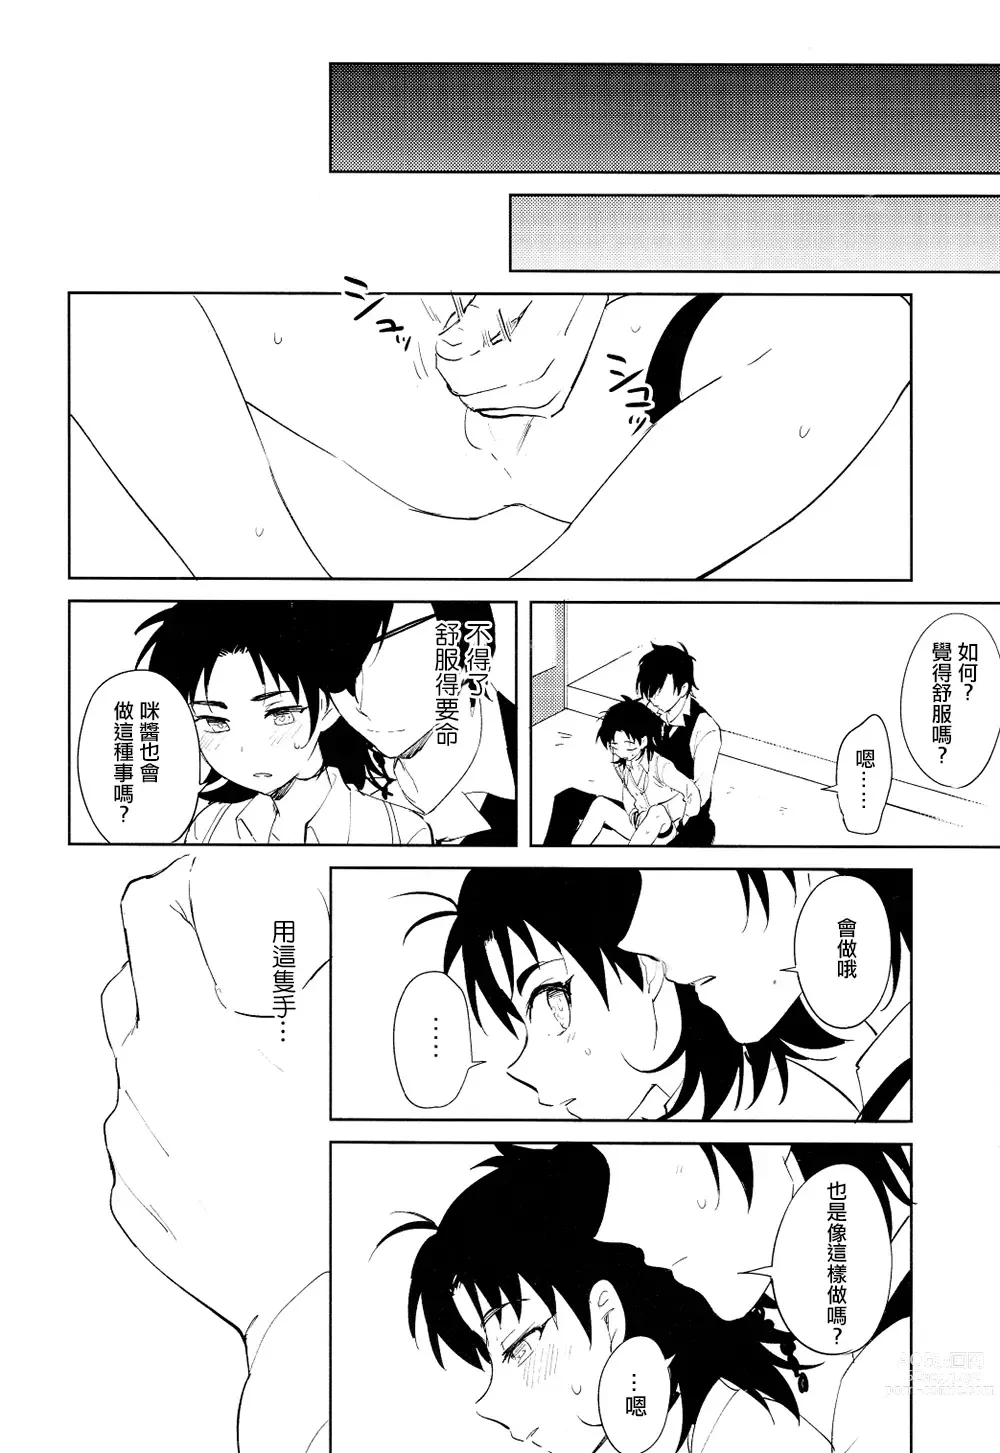 Page 7 of doujinshi 从一个人变成两个人